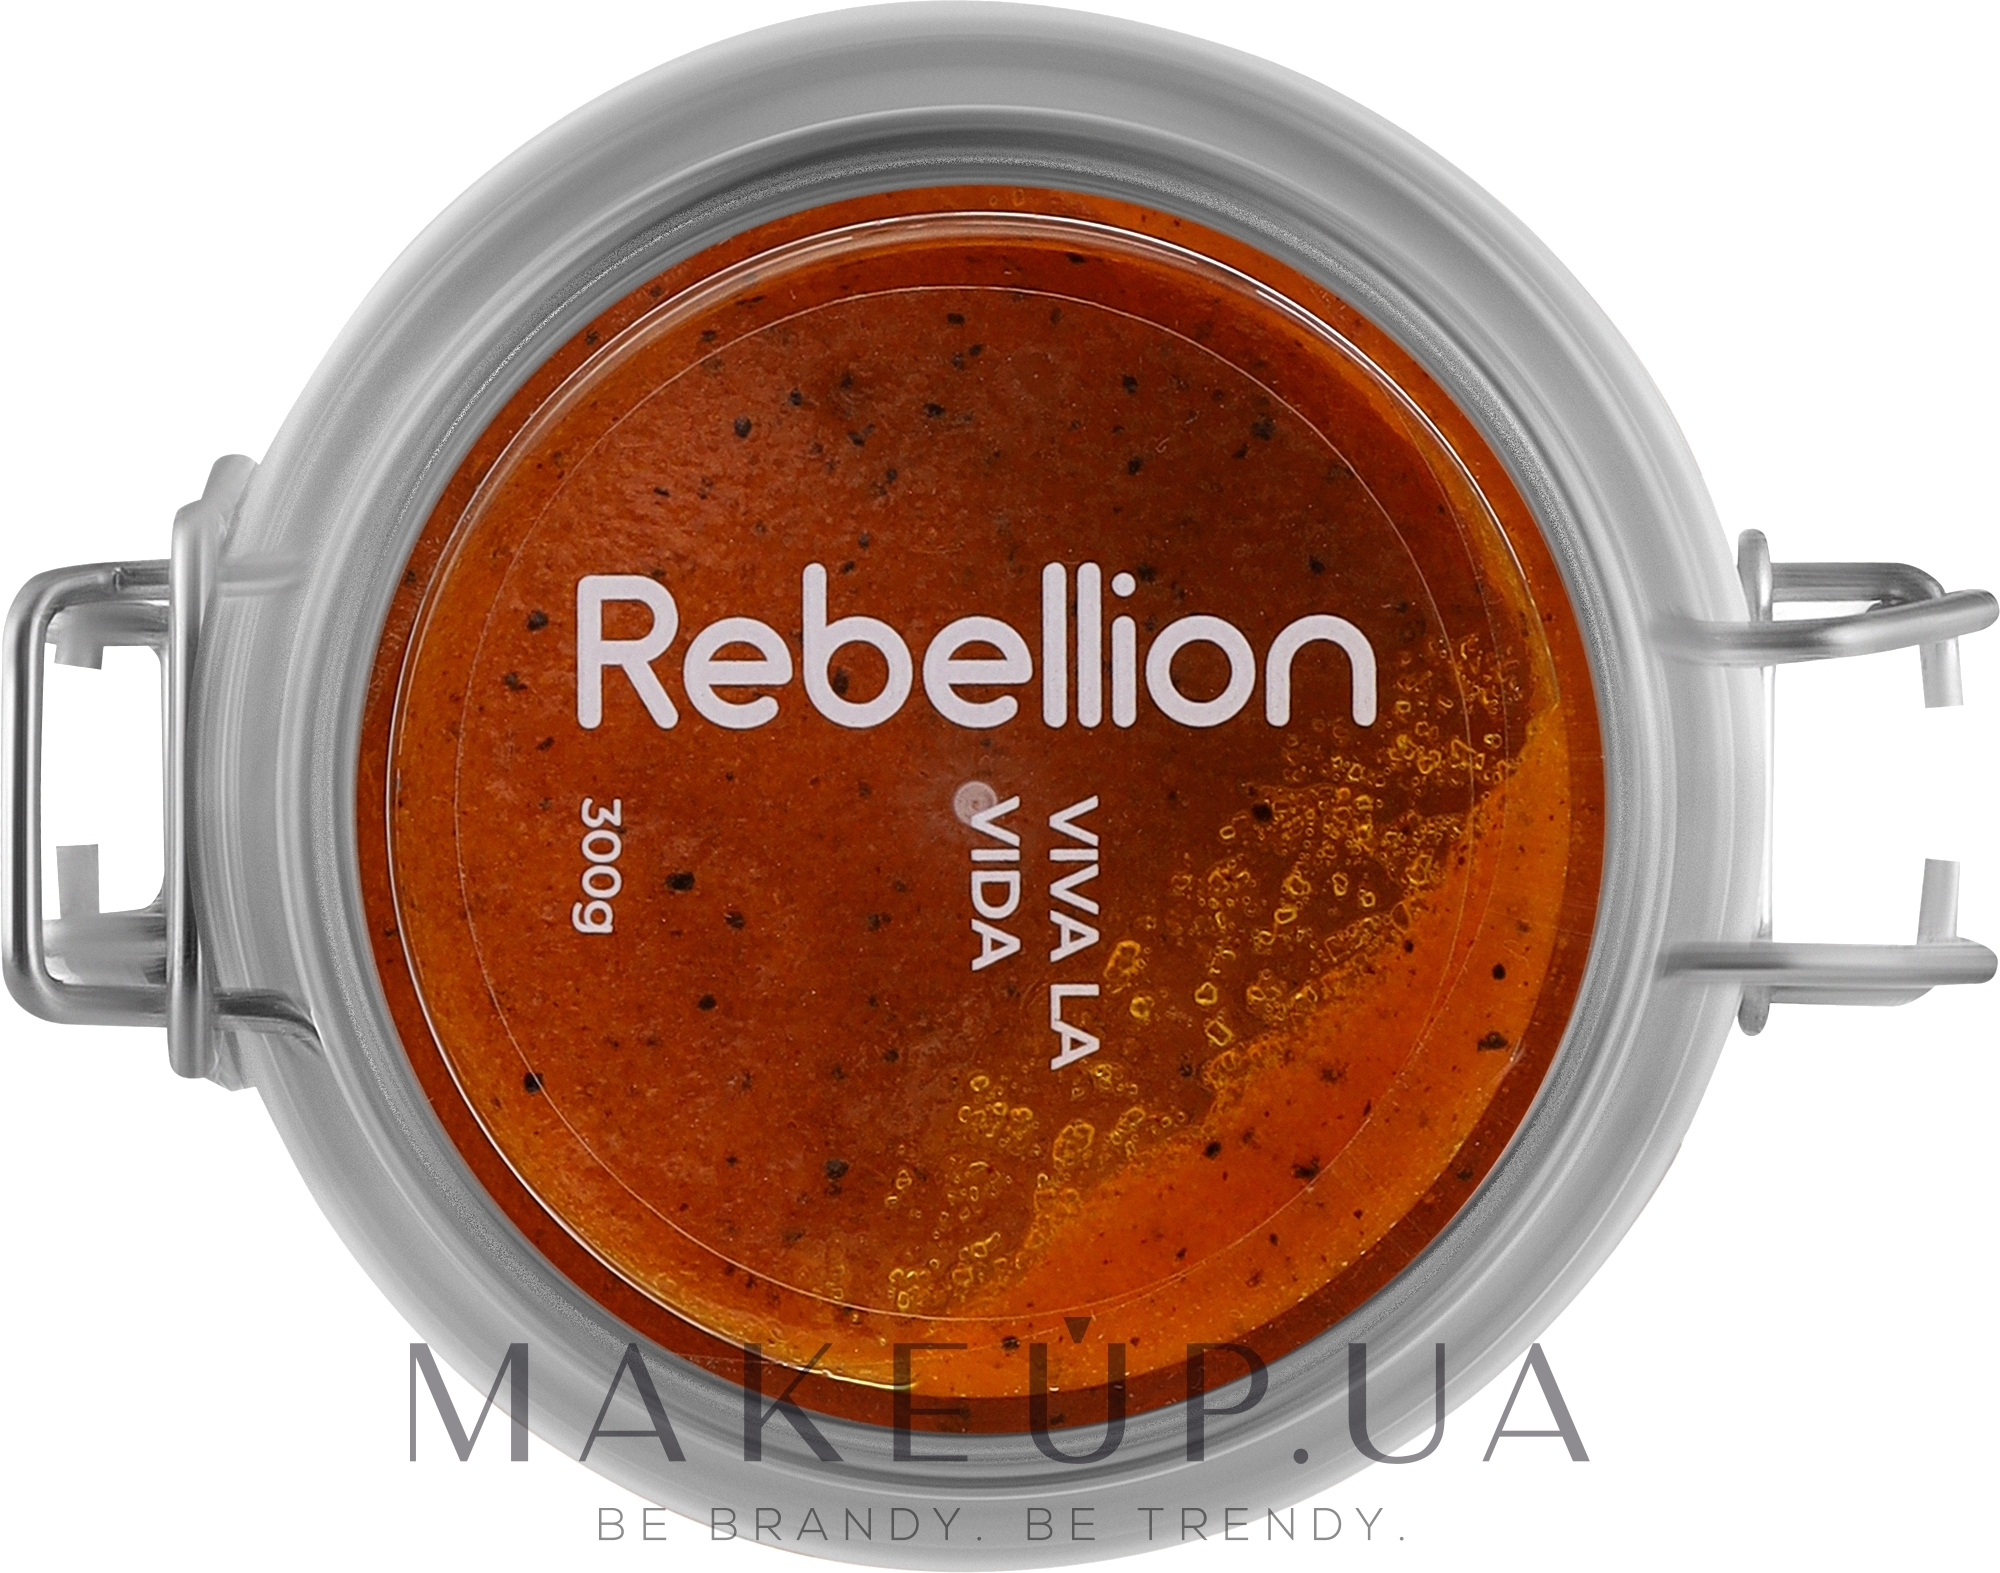 Rebellion Viva La Vida - Парфумований скраб для тіла — фото 300g